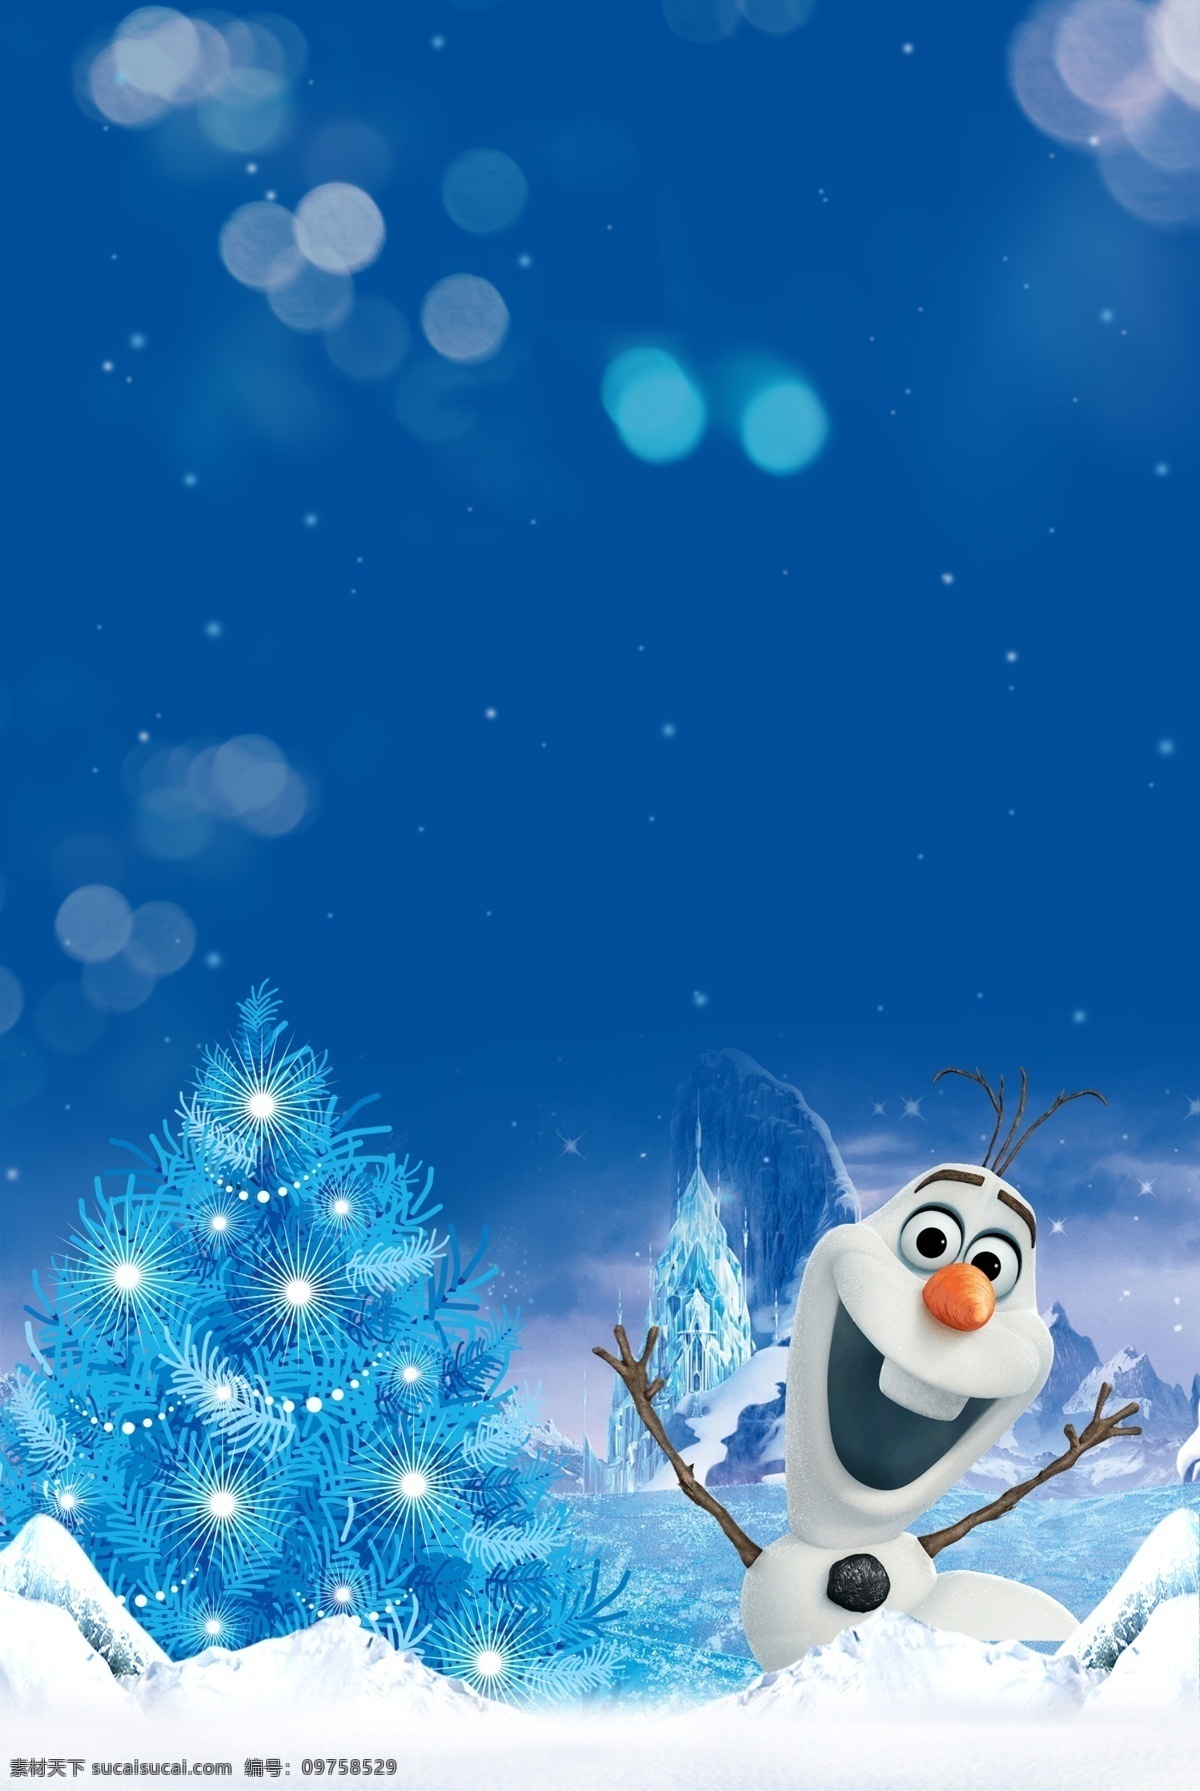 冰雪奇缘雪人 冰雪奇缘 雪人 蓝色圣诞树 背景 蓝色背景